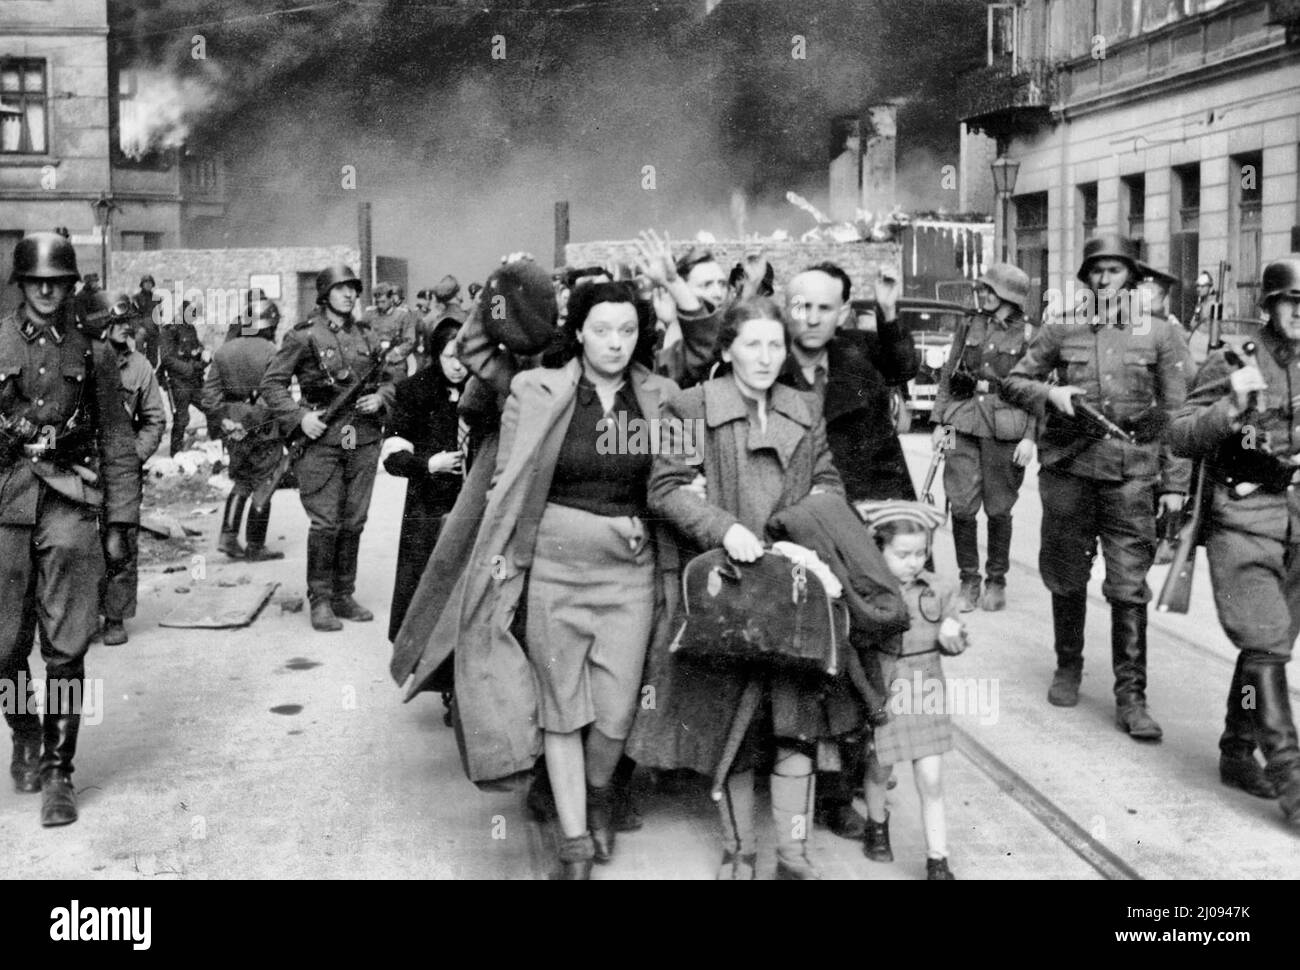 Rivolta del Ghetto di Varsavia - soppressione dell'insurrezione del Ghetto di Varsavia - gli ebrei catturati sono condotti dai soldati tedeschi della Waffen SS al punto di raccolta per la deportazione Foto Stock